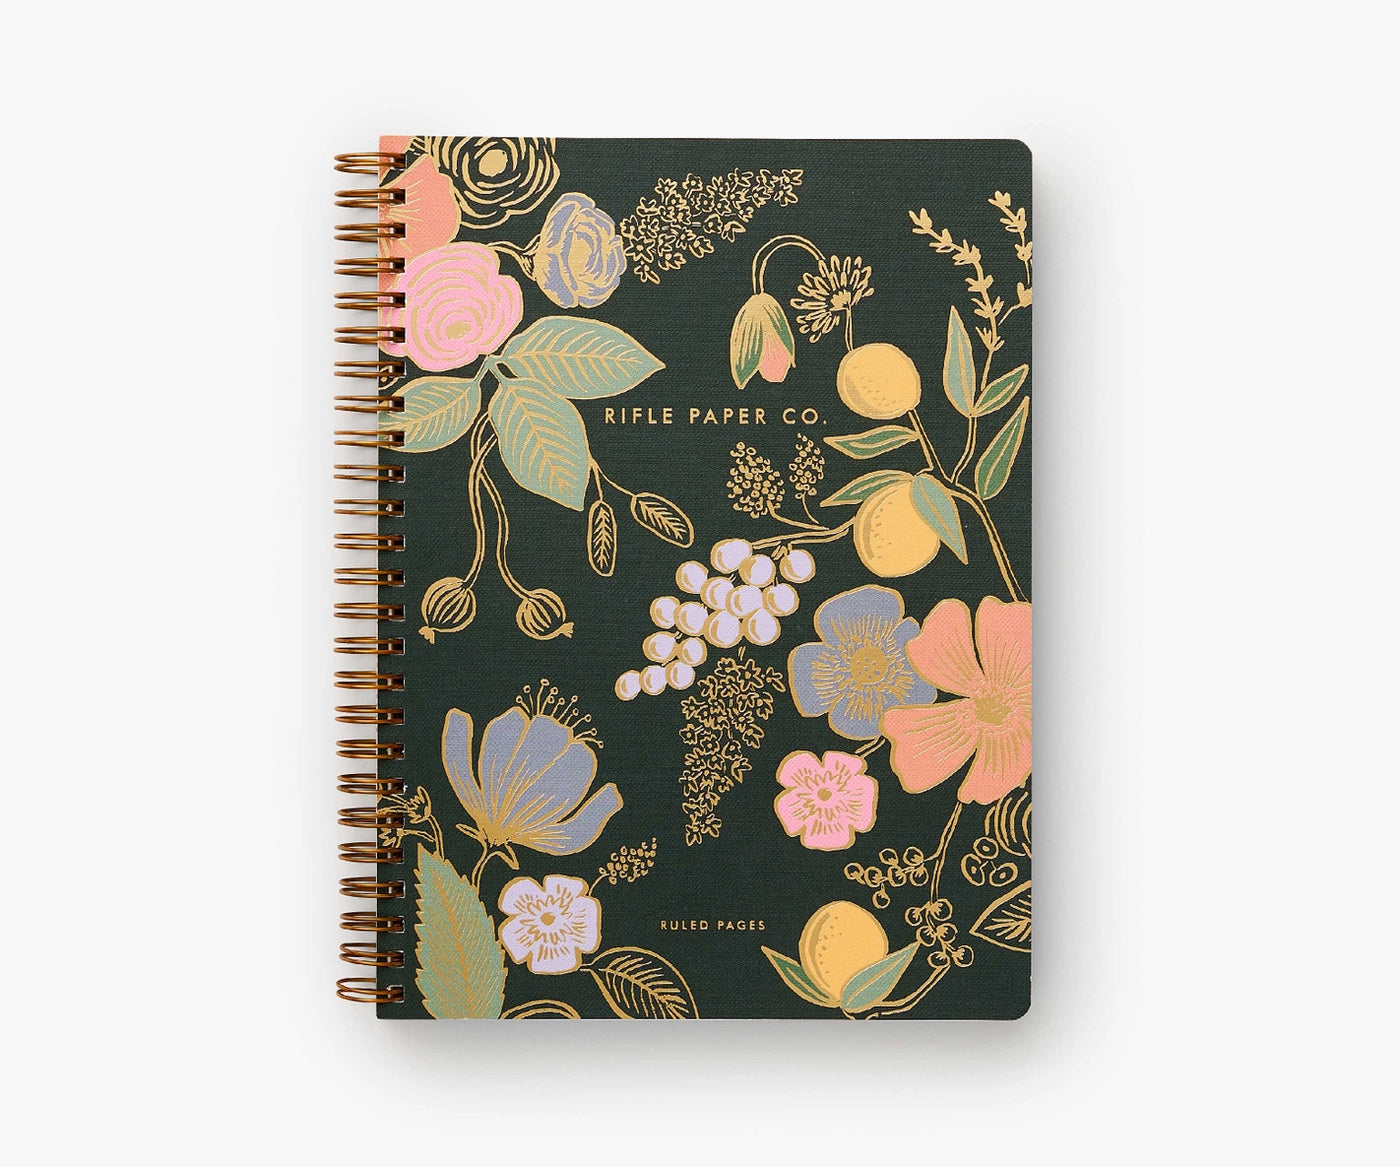 Spiral Notebook-Assorted